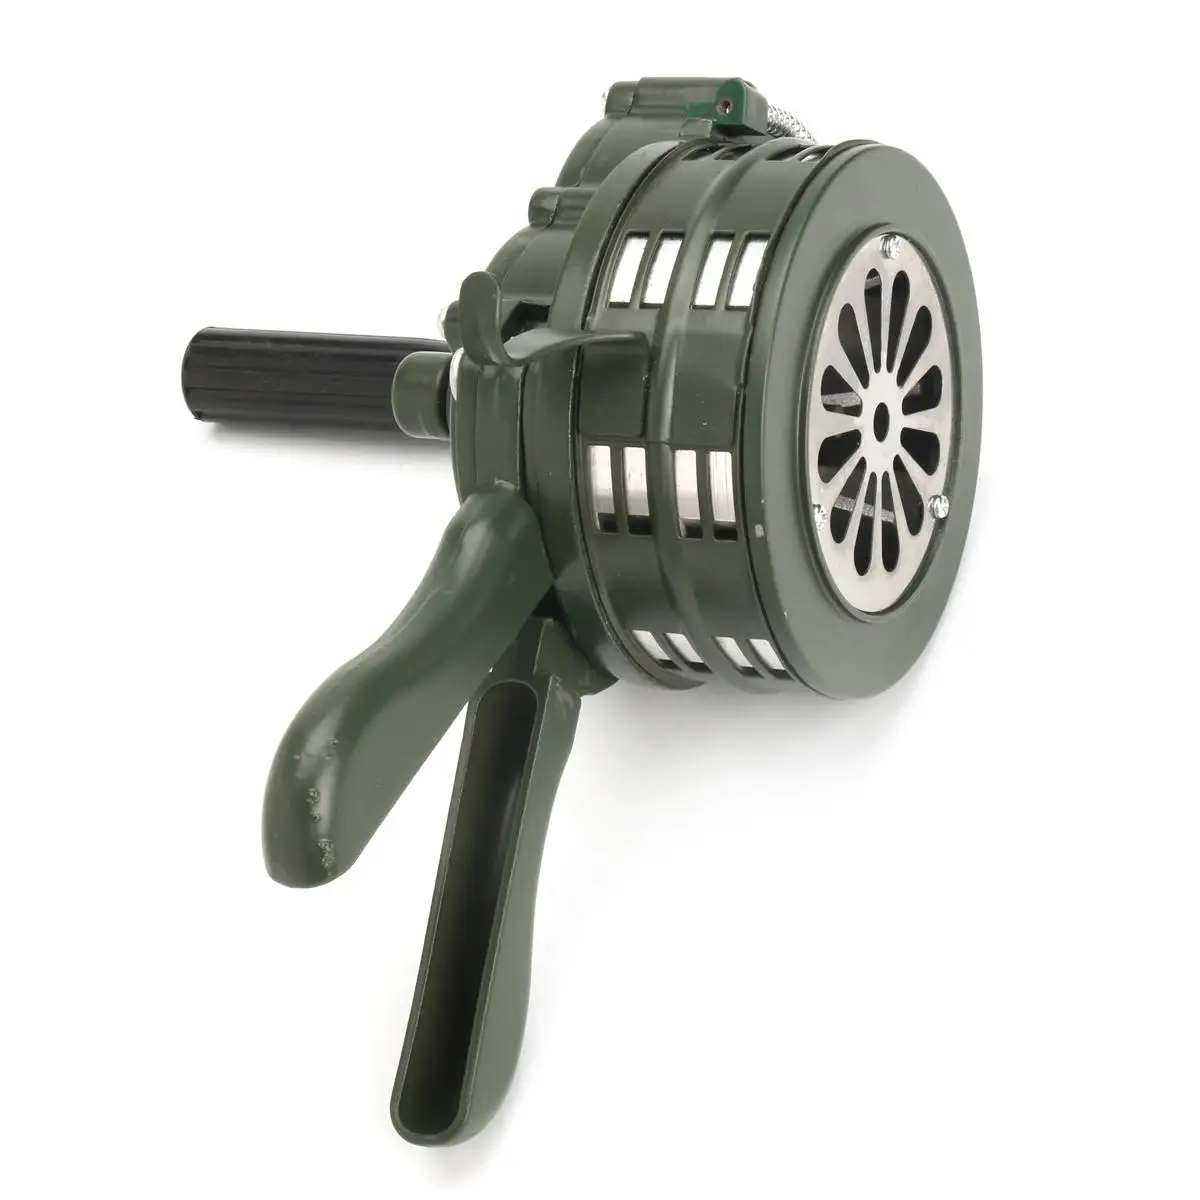 110dB Зеленый Алюминий сплав рукоятка с ручным управлением Air Raid аварийный сигнал безопасности зуммер домашней самозащиты безопасности